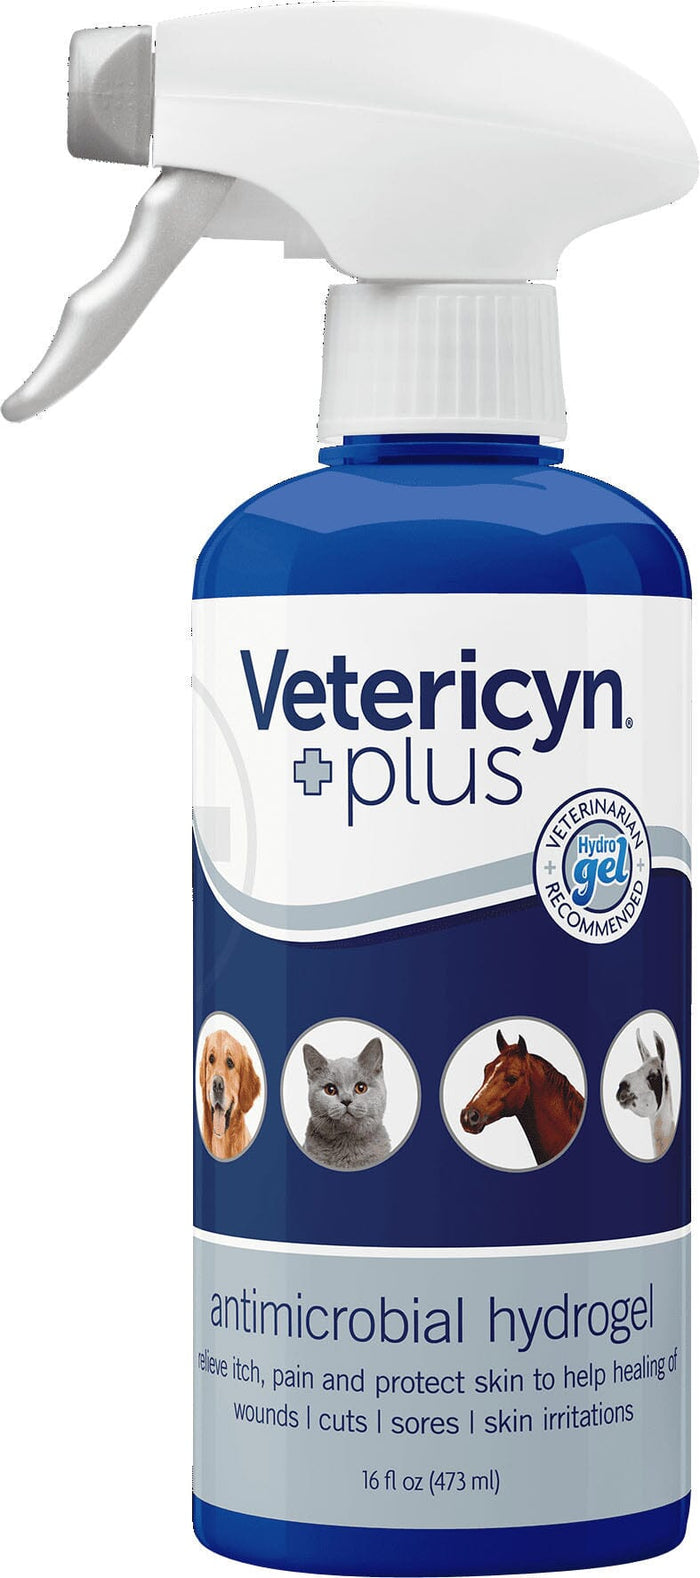 Vetericyn Plus Antimicrobial Hydrogel Veterinary Supplies Sprays/Daubers - 16 Oz